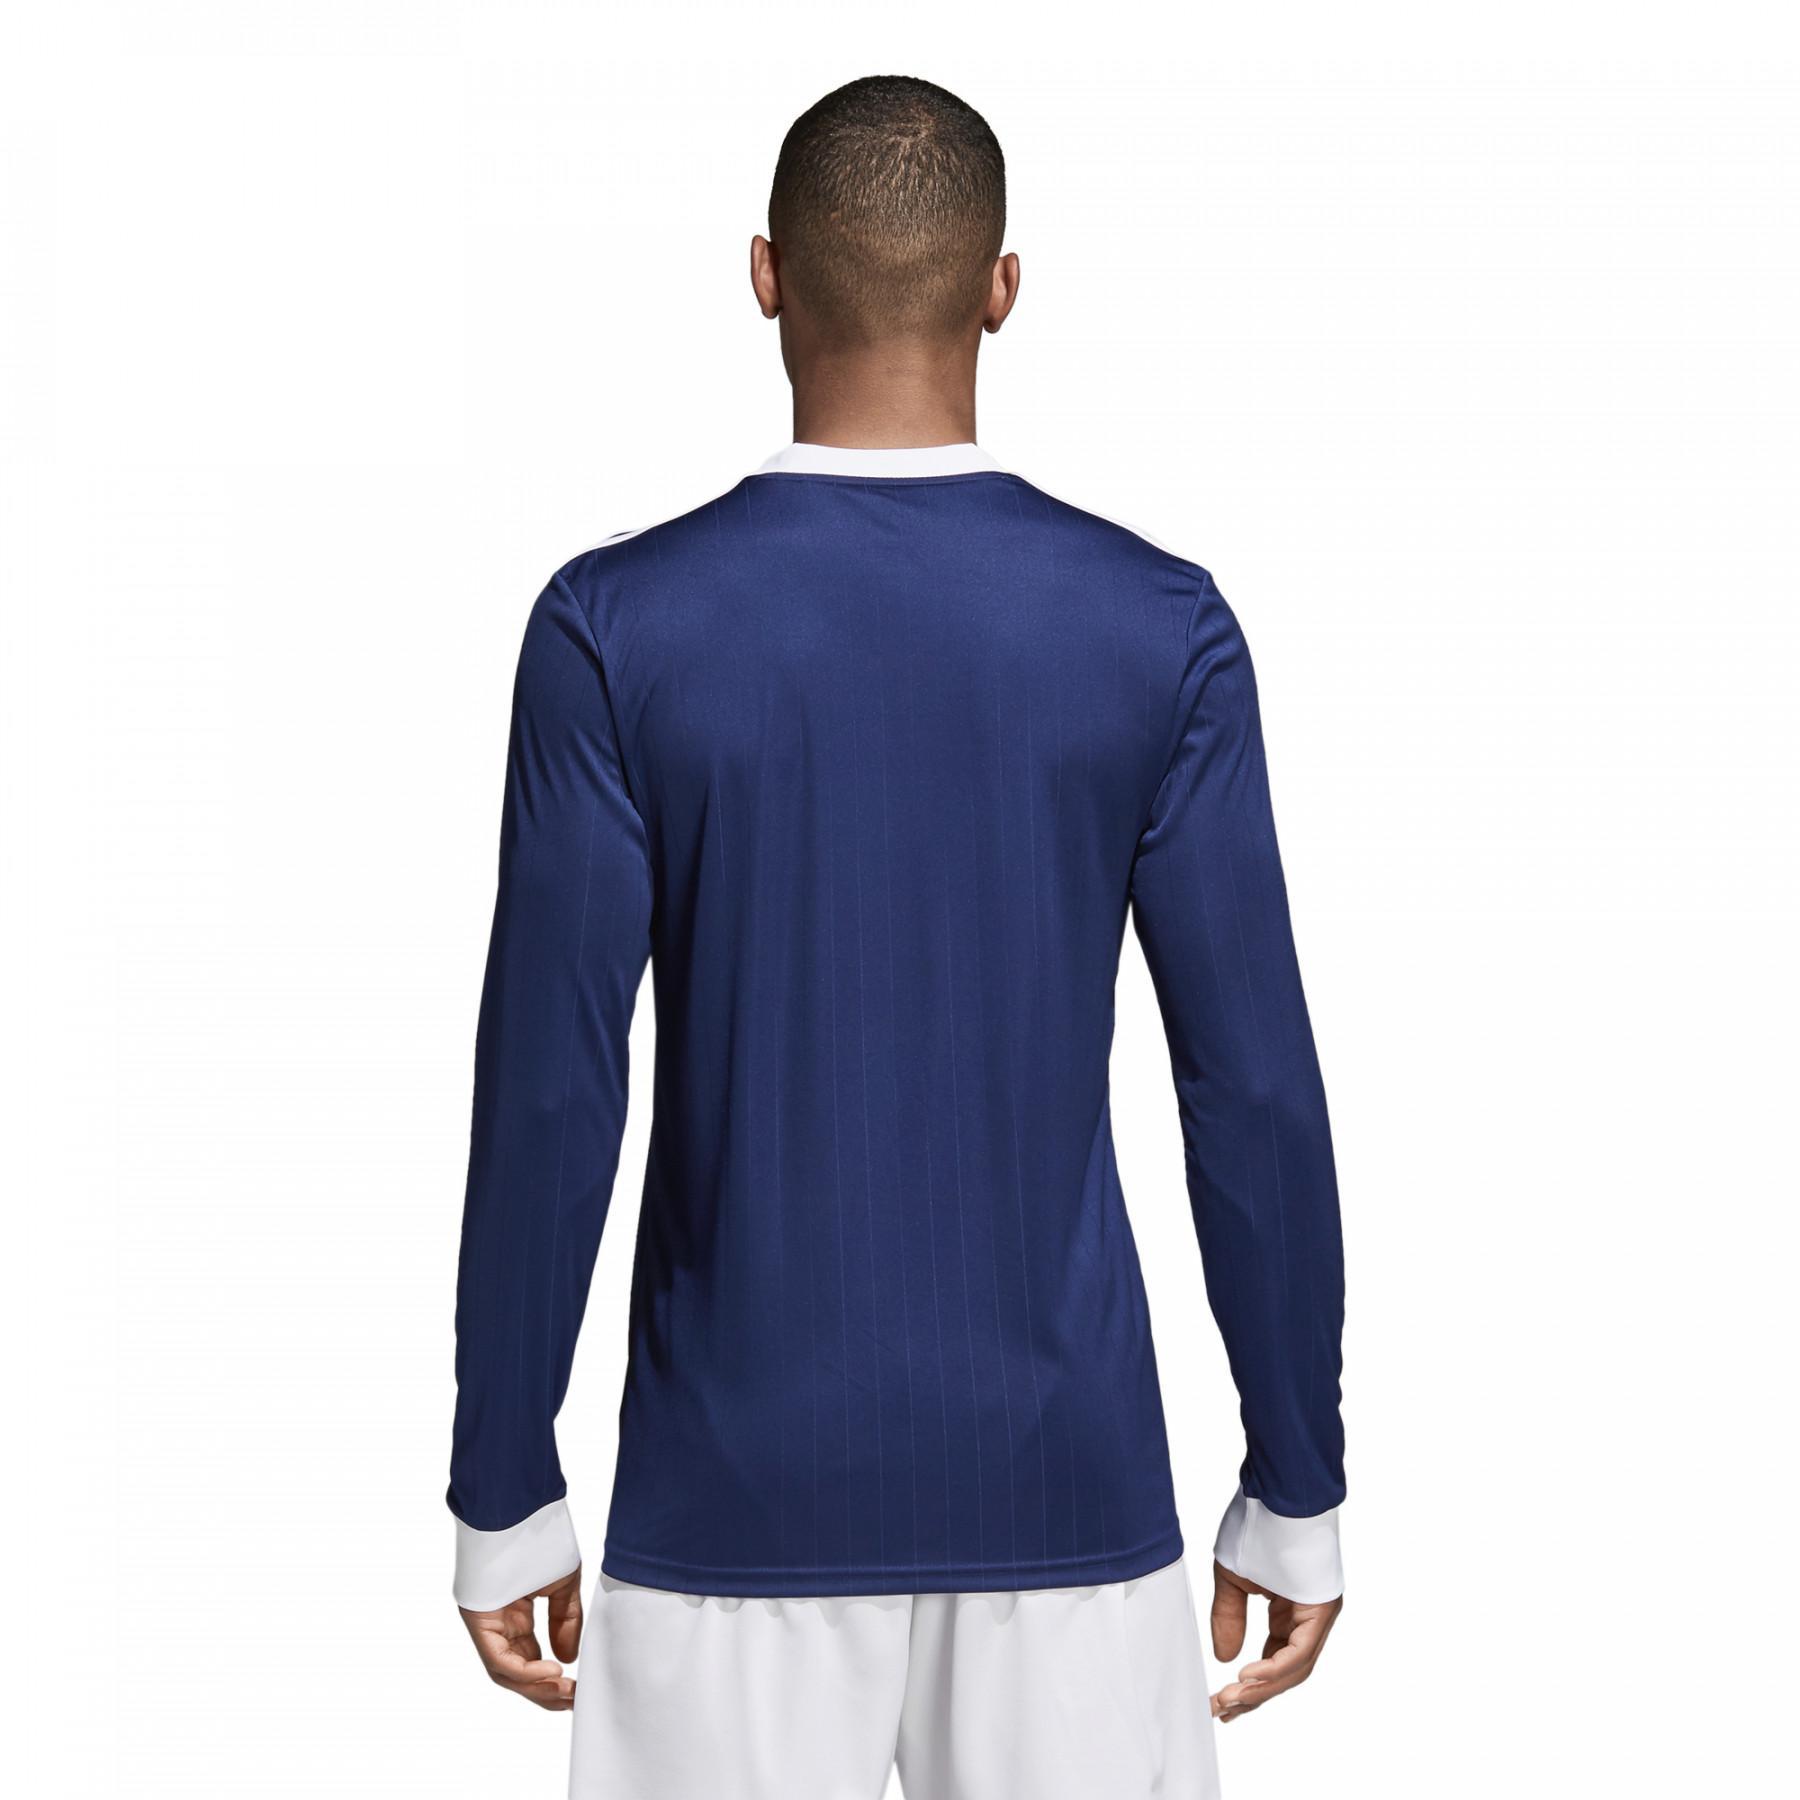 Jersey de manga larga adidas Tabela 18 - adidas - Camisetas de entrenamiento -